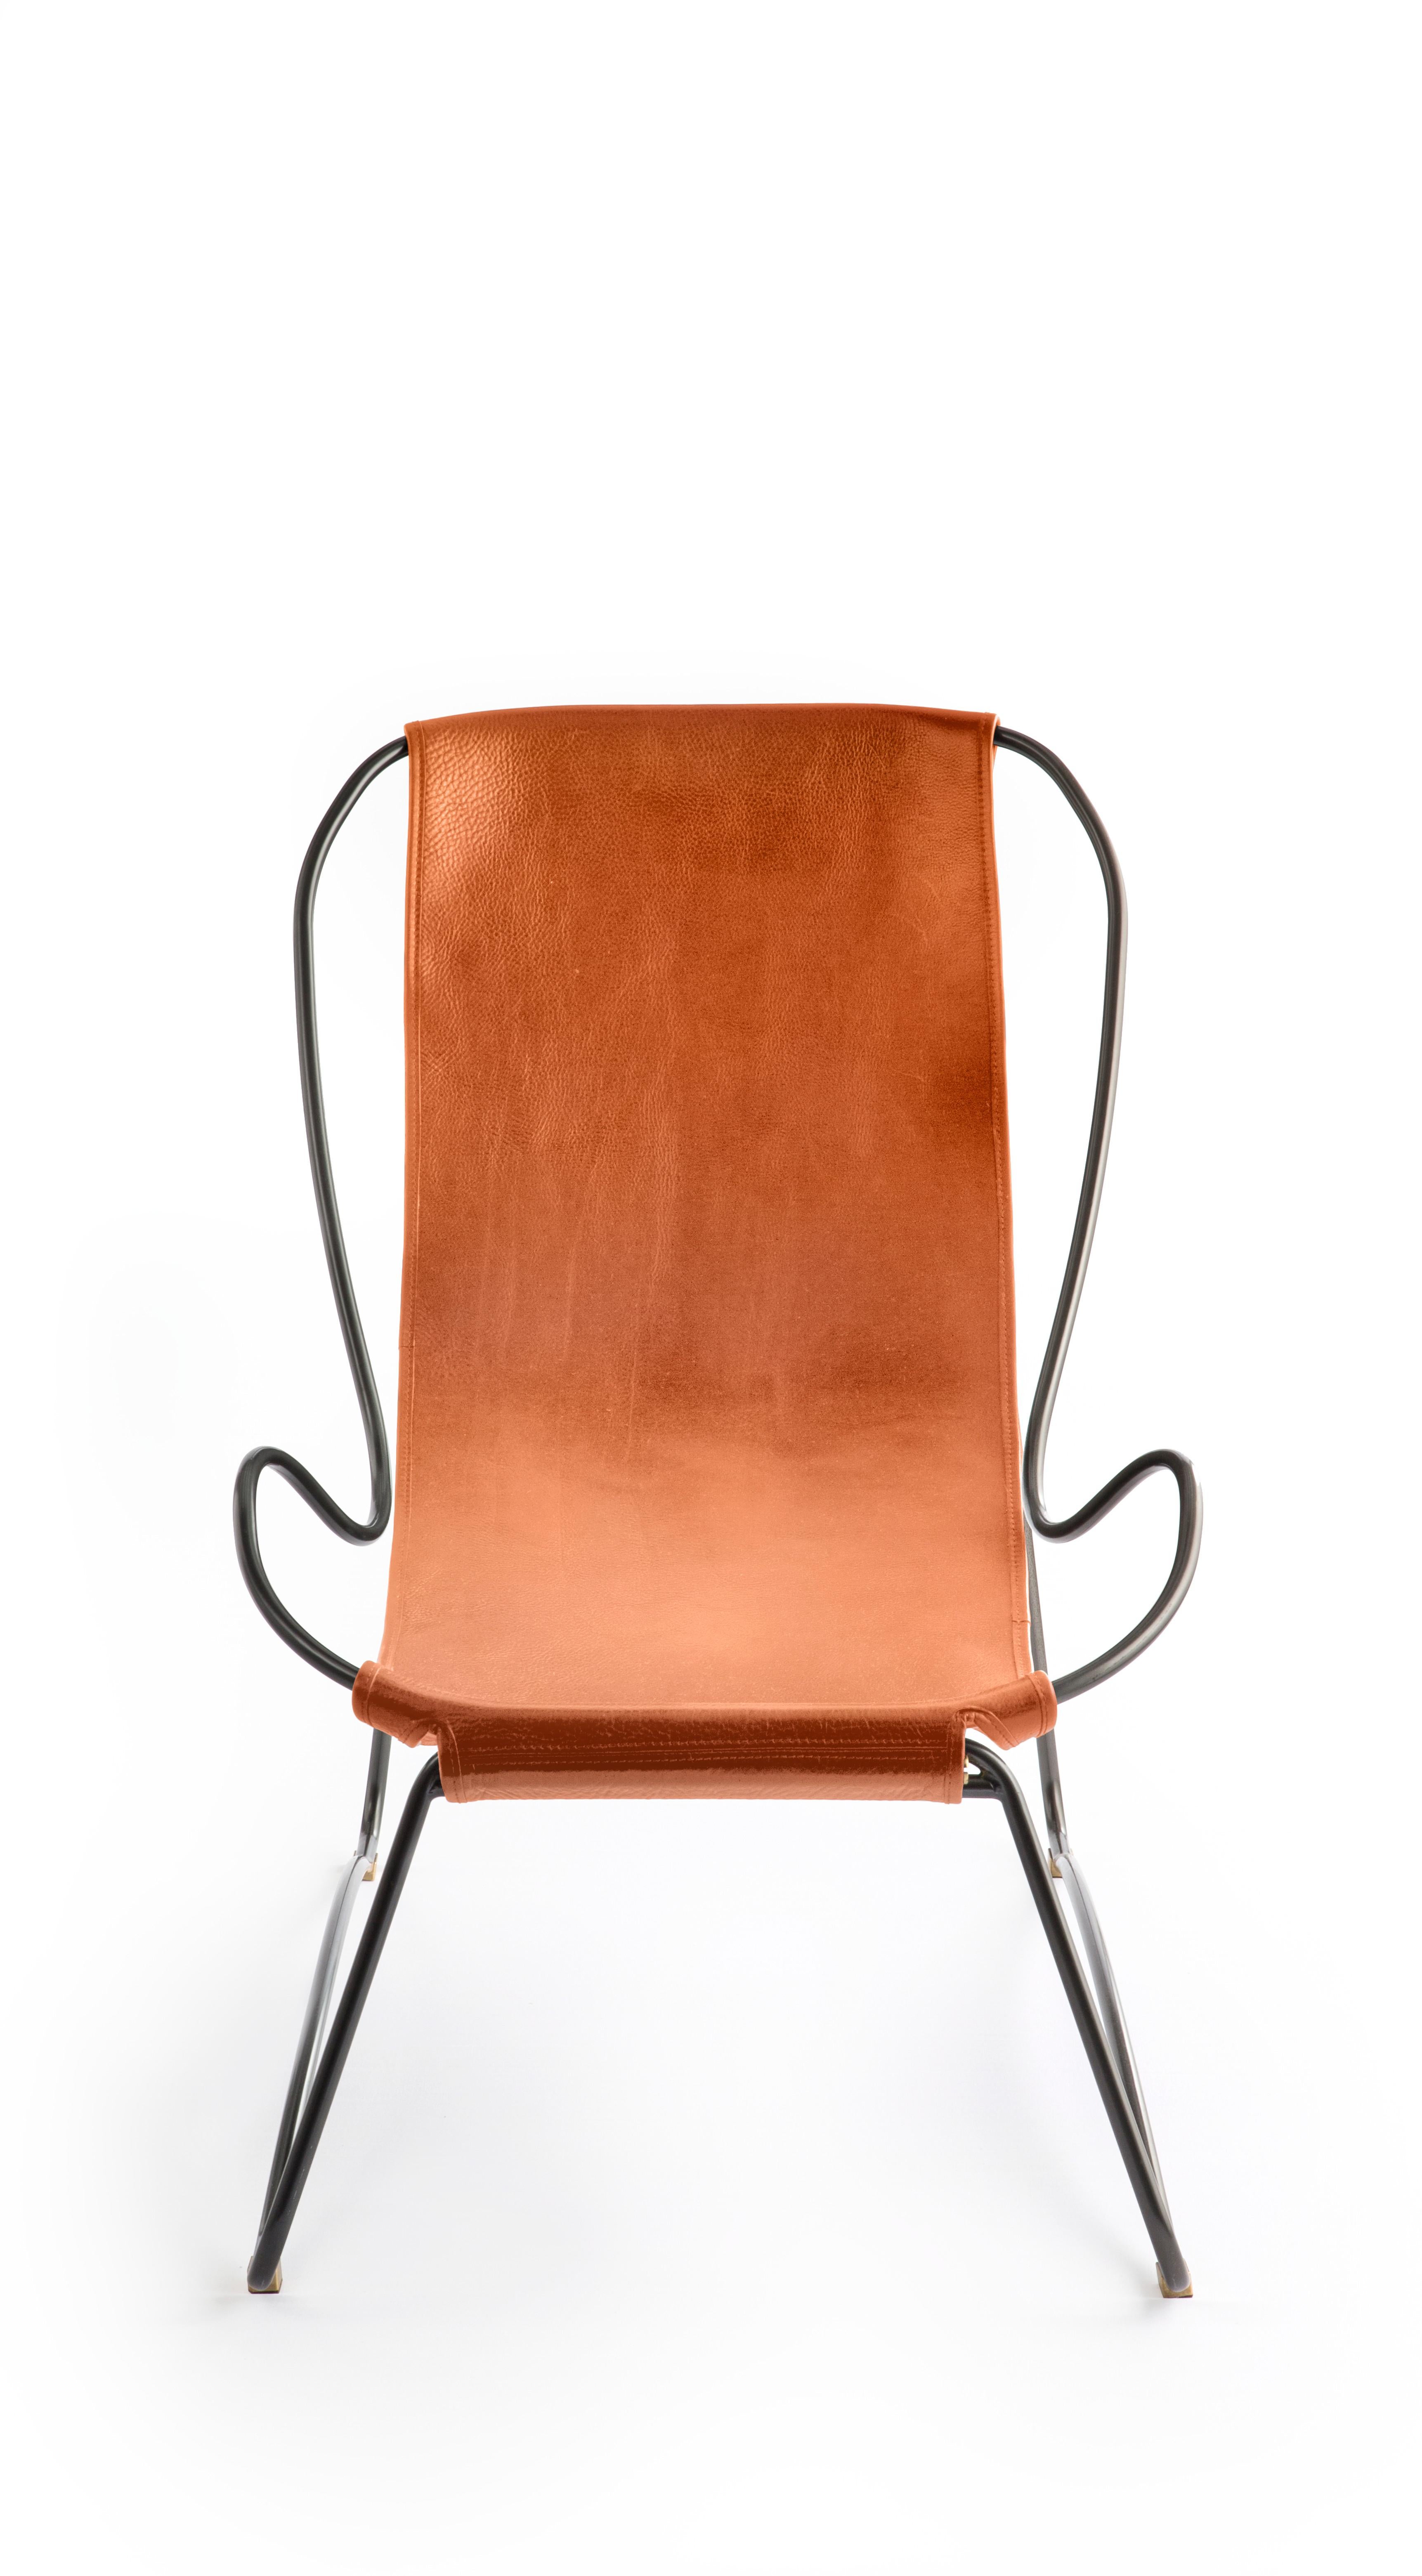 La chaise longue et l'ottoman AM Contemporary sont dessinés et conçus avec une esthétique légère. La légère oscillation de la tige en acier de 16/12 mm est complétée par la souplesse du double cuir de 3,5 mm d'épaisseur. En s'asseyant dans ce